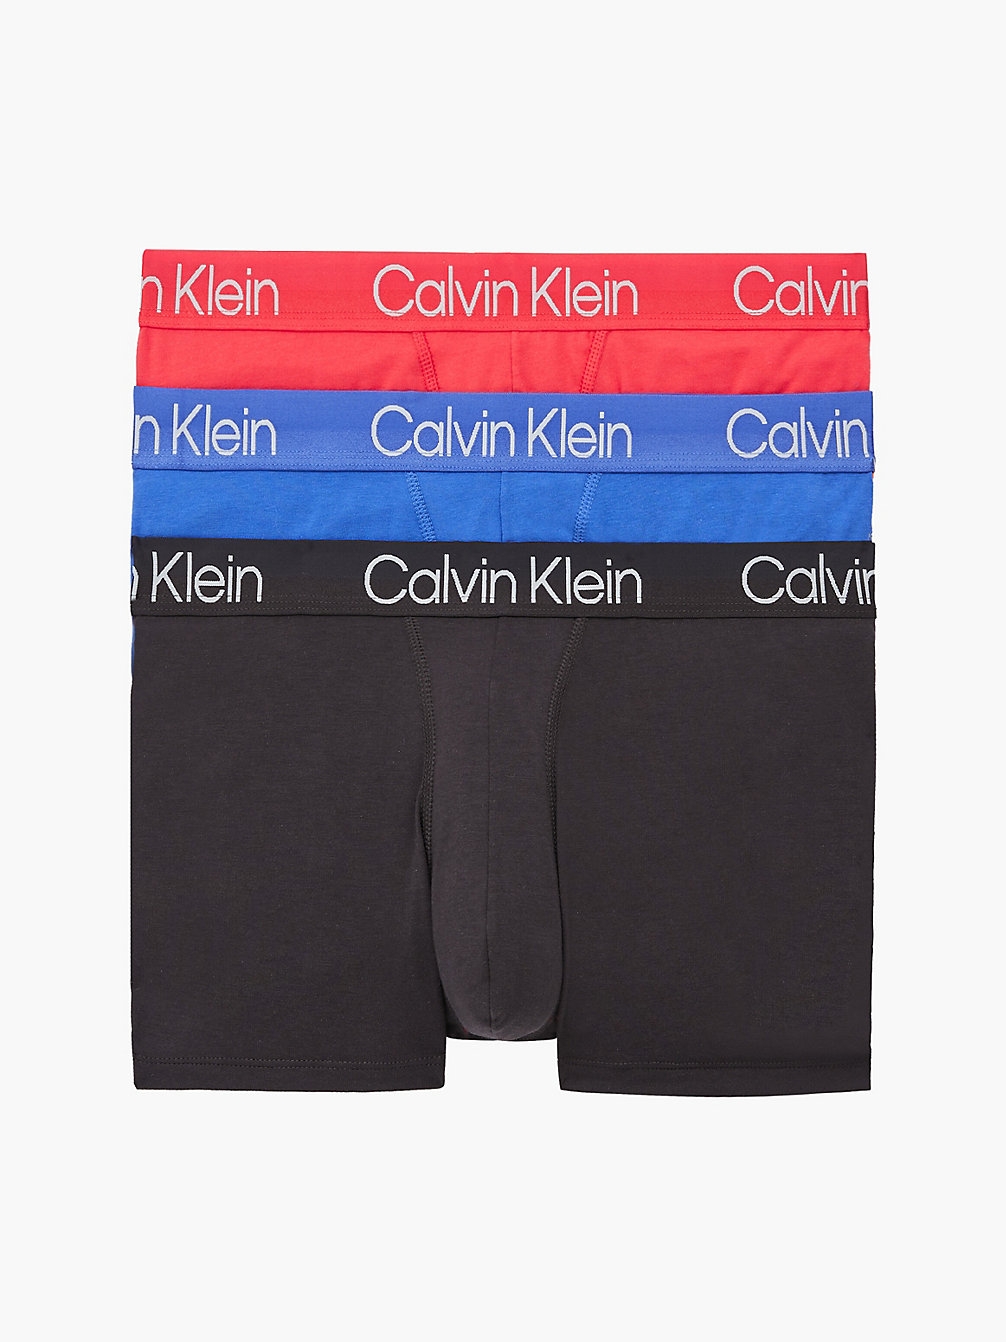 STRAWB FIELD/VERONA BLUE/ALMOST BLK 3er-Pack Boxershorts – Modern Structure undefined Herren Calvin Klein